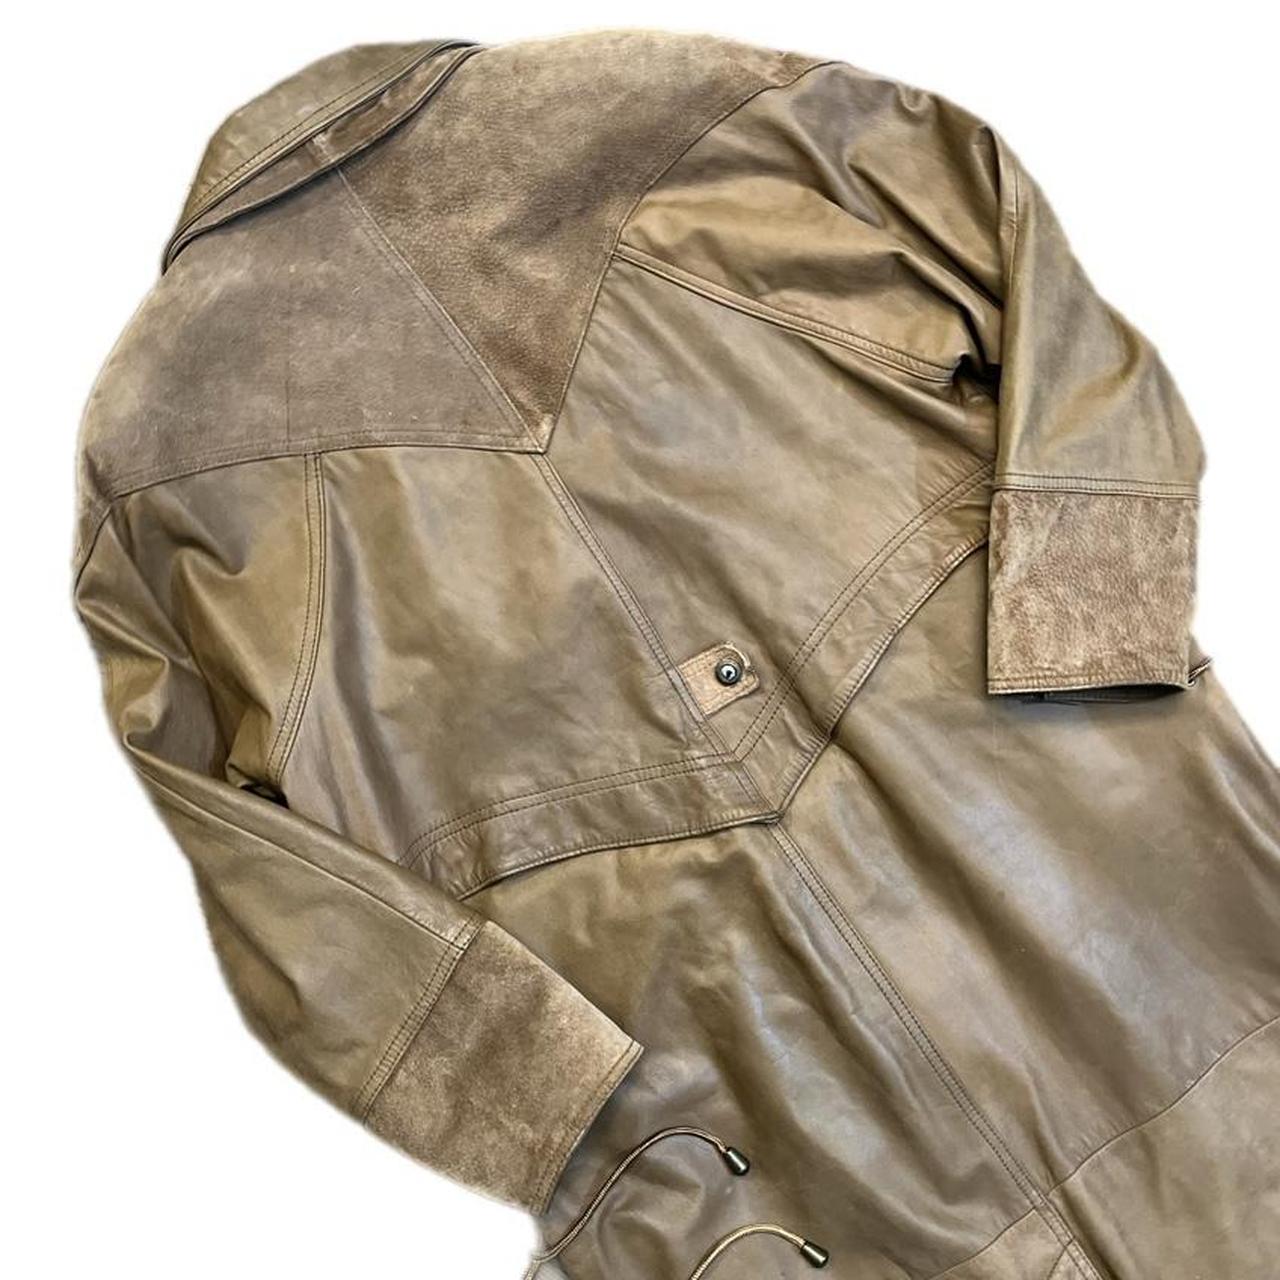 Vintage Brown Leather Trench Winter Coat Vintage... - Depop